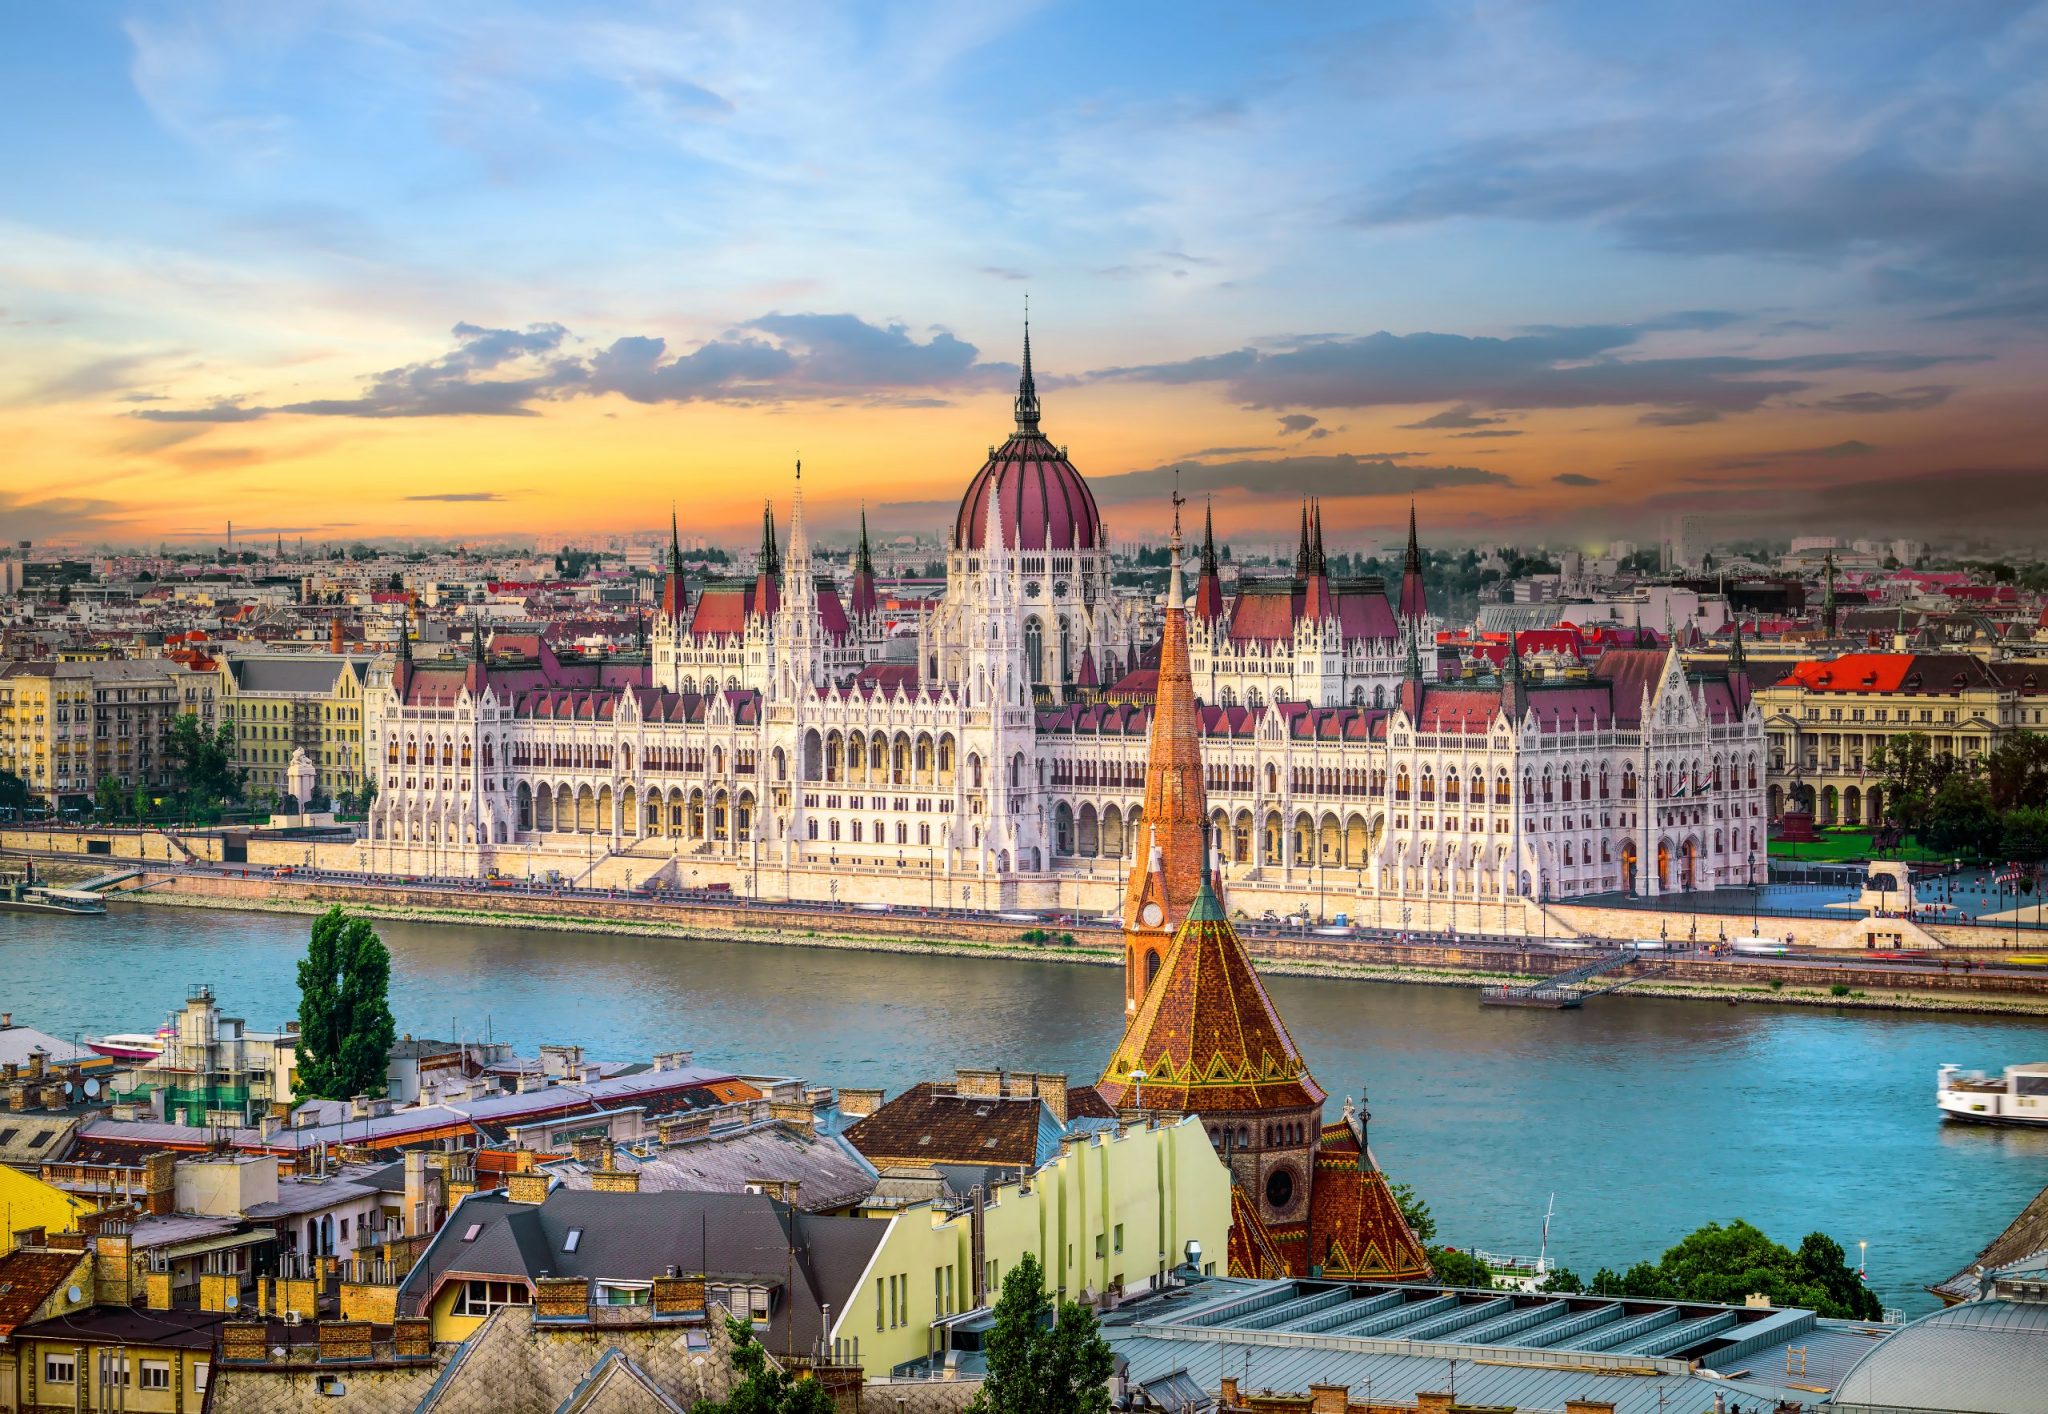 Bright sunset over famous landmarks in Budapest